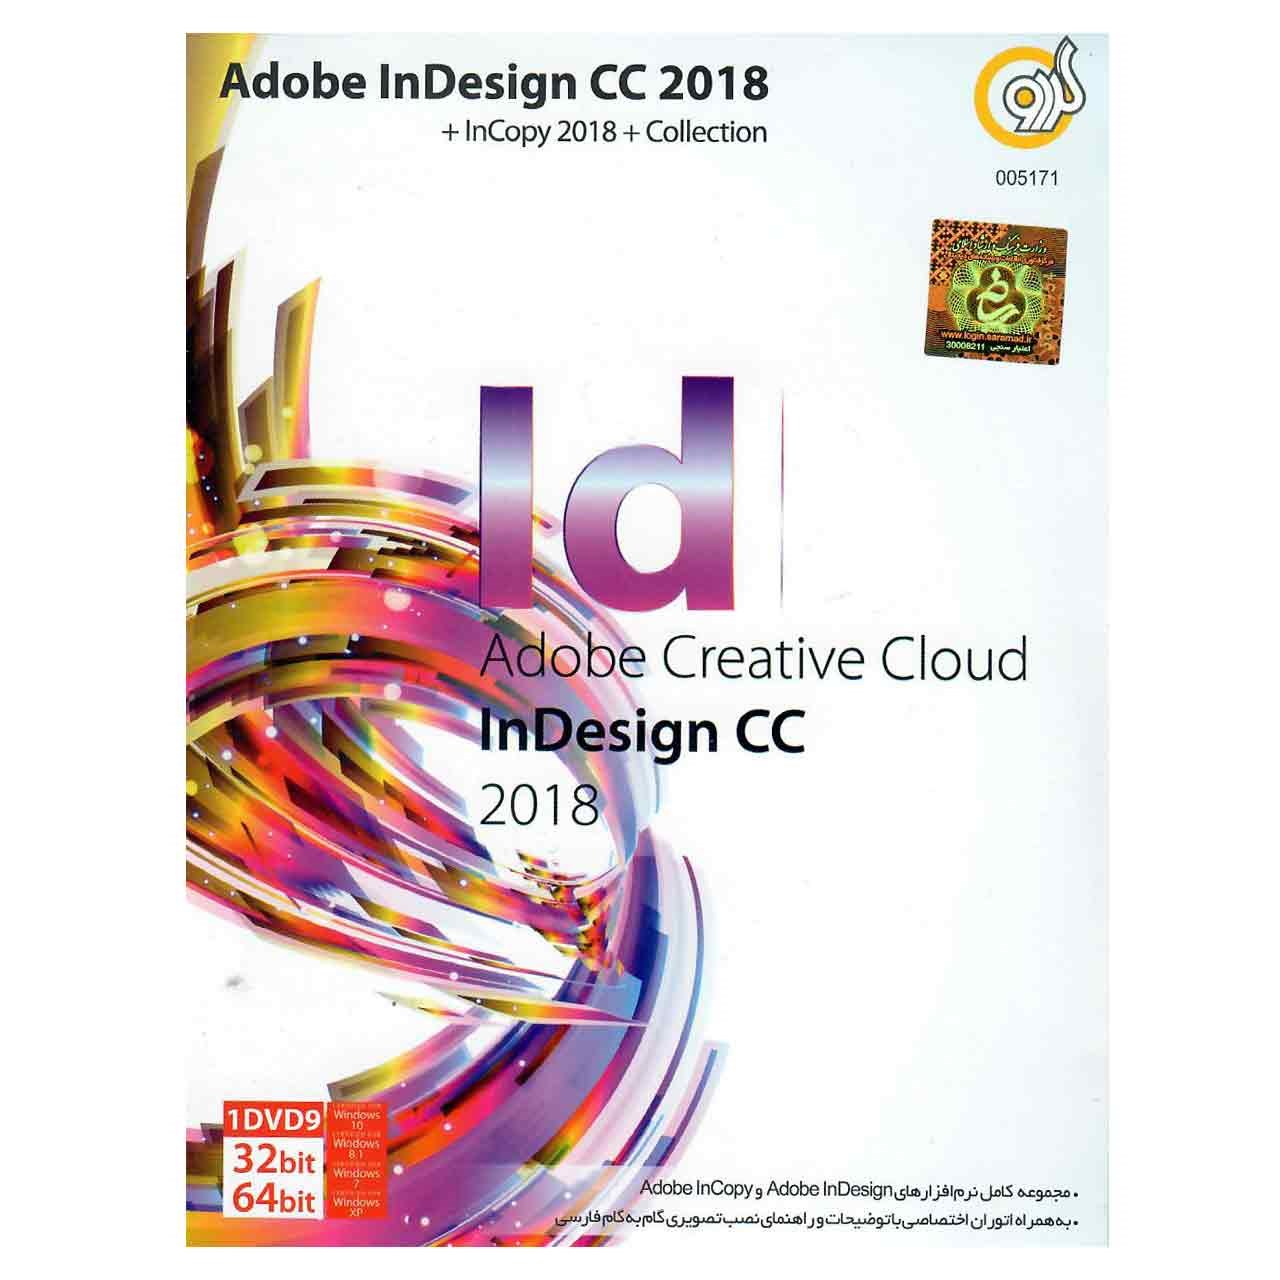 نرم افزار Adobe InDesign CC 2018 به همراه Collection نشر گردو